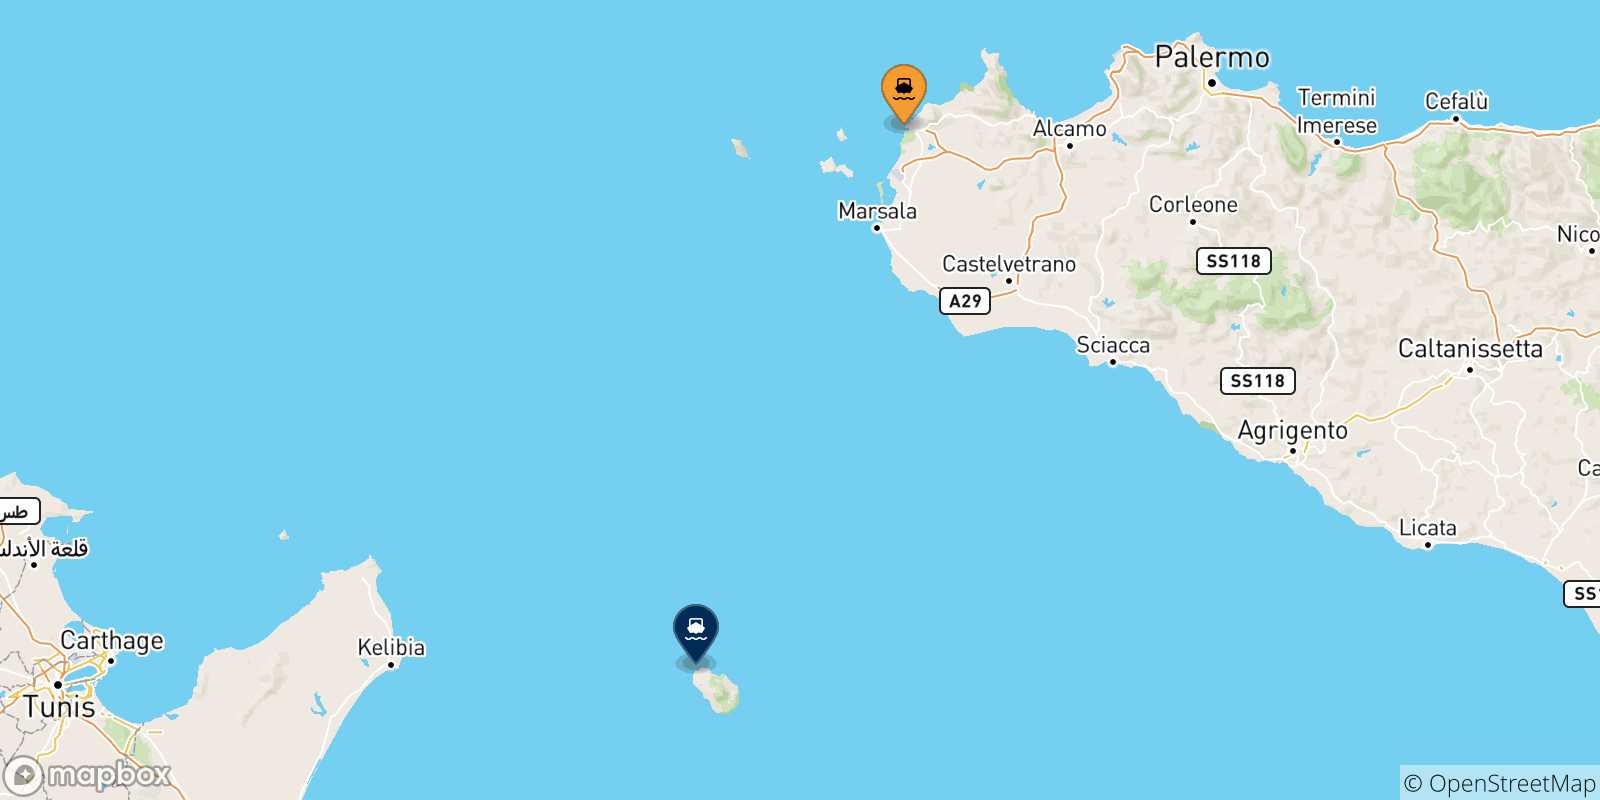 Mappa dei porti collegati con l' Isola Di Pantelleria